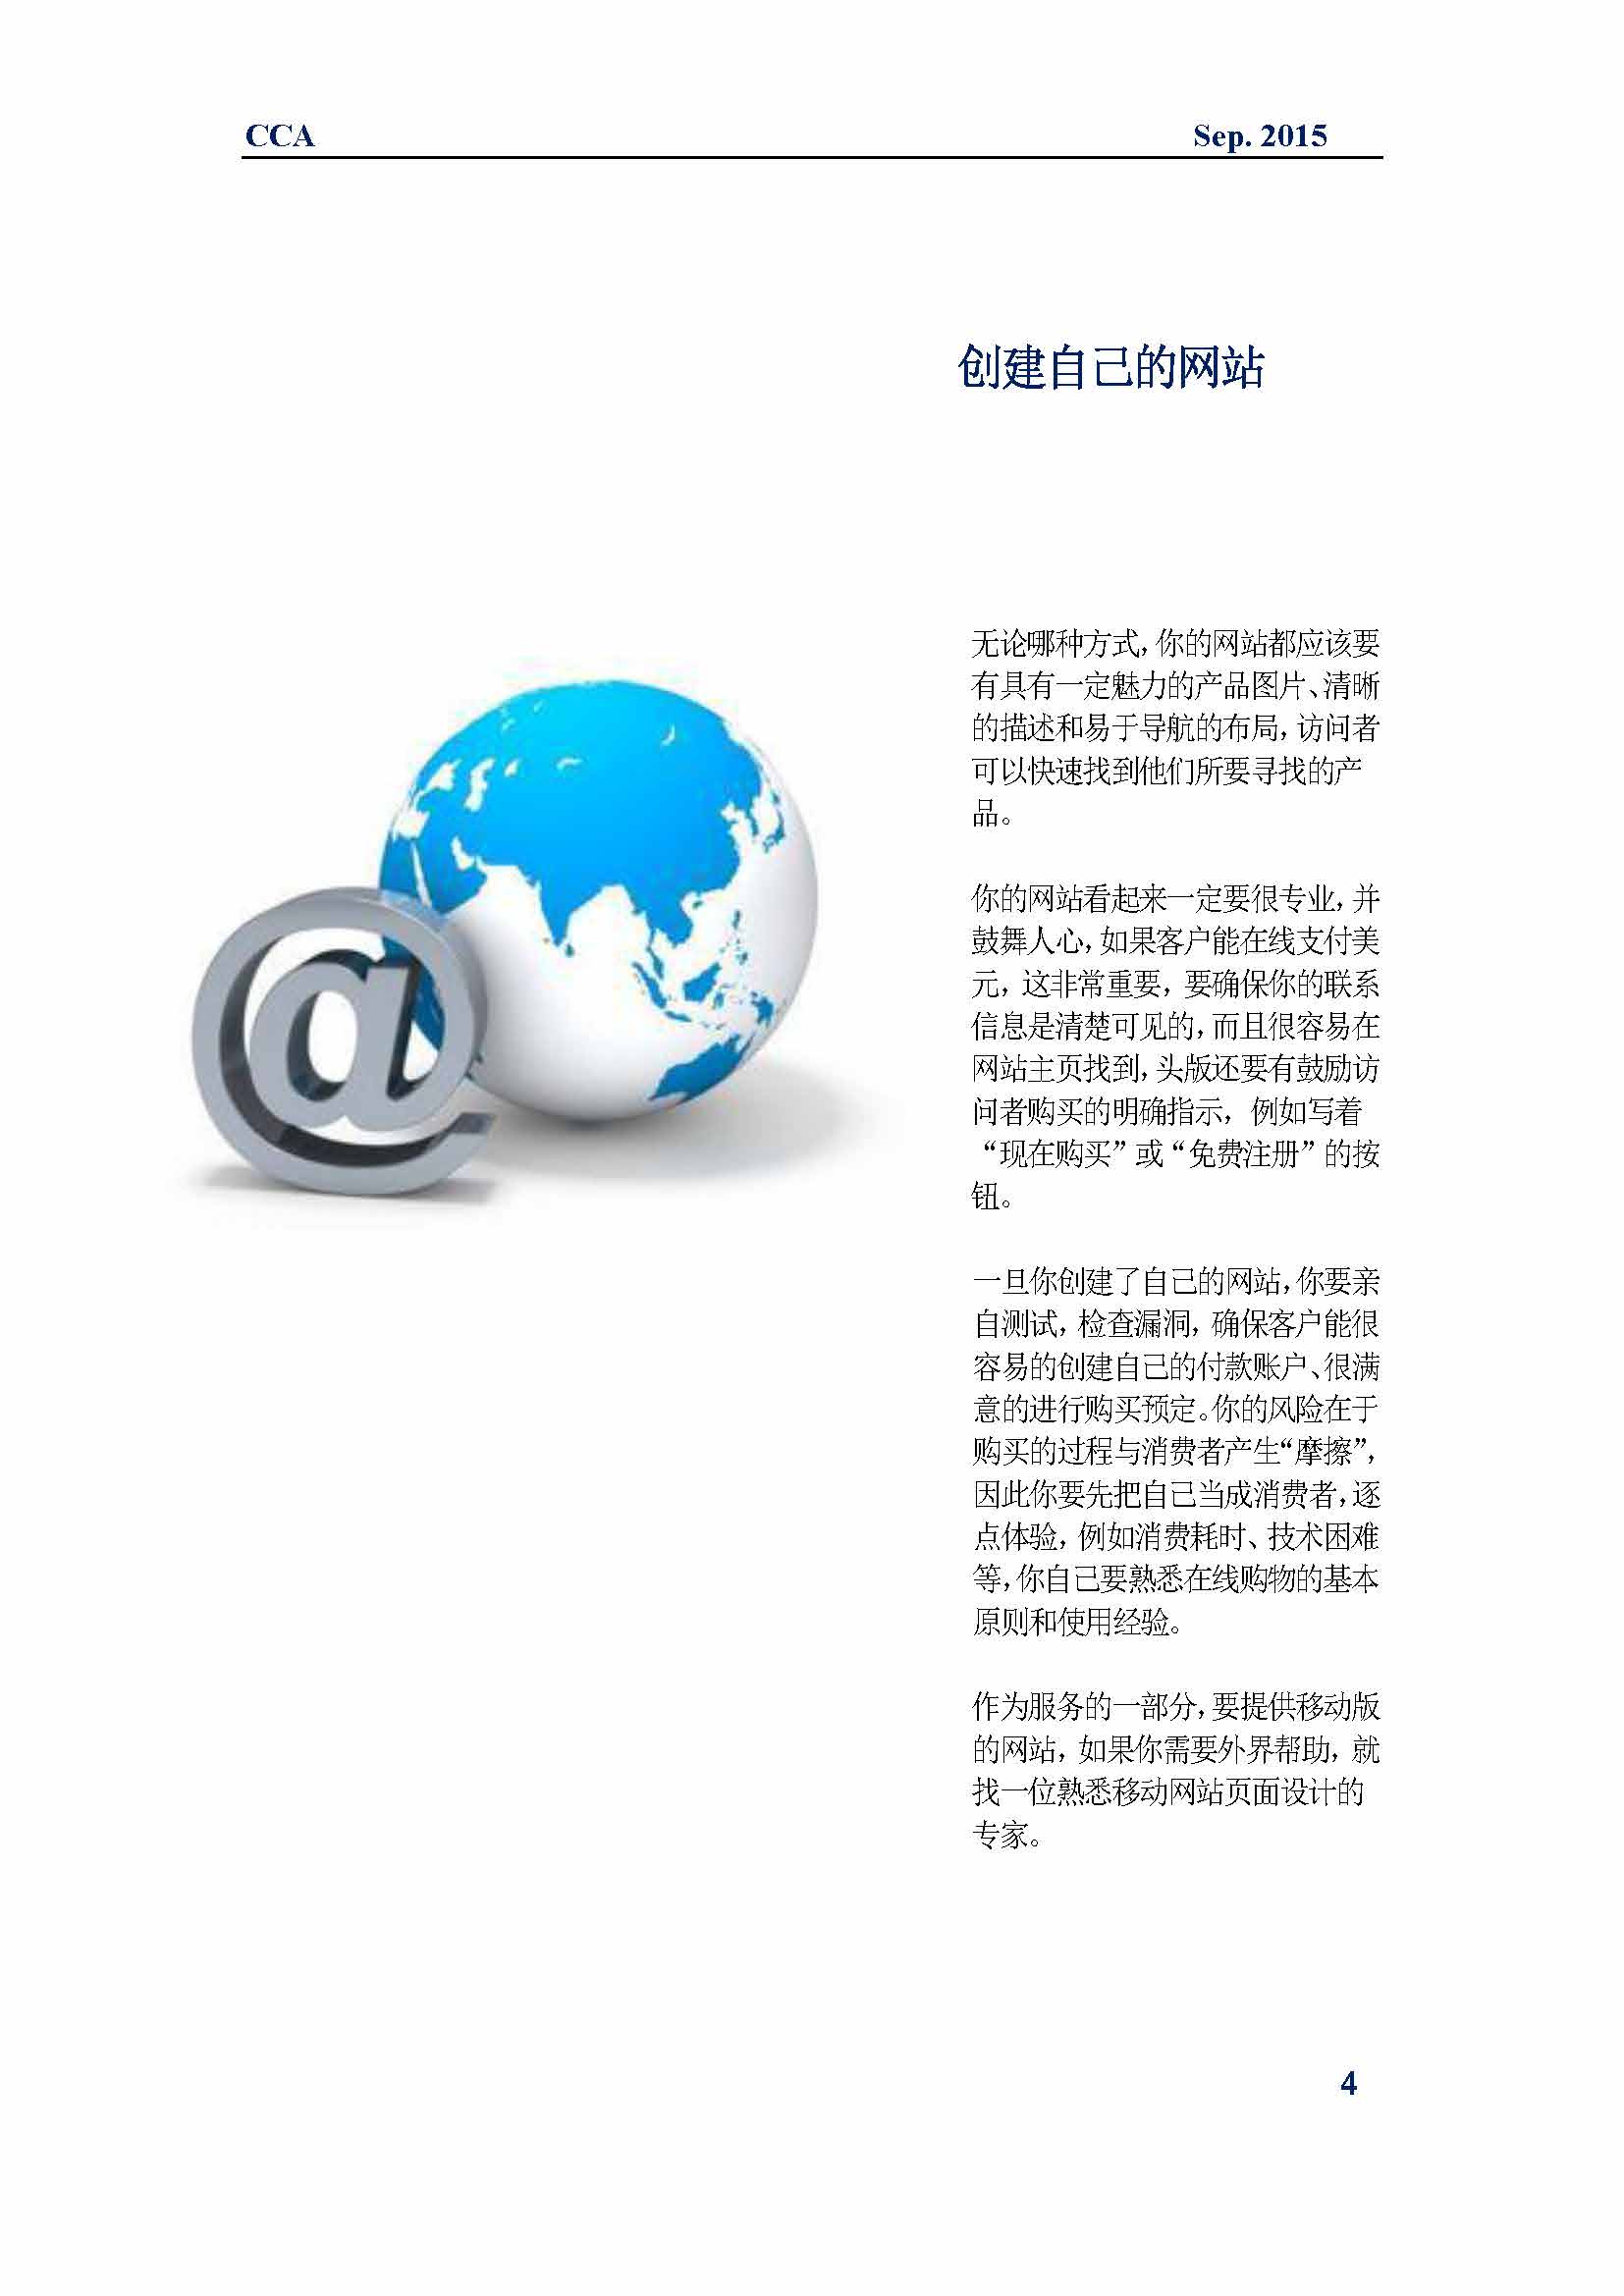 中国科技咨询协会国际快讯（第二十五期)_页面_07.jpg